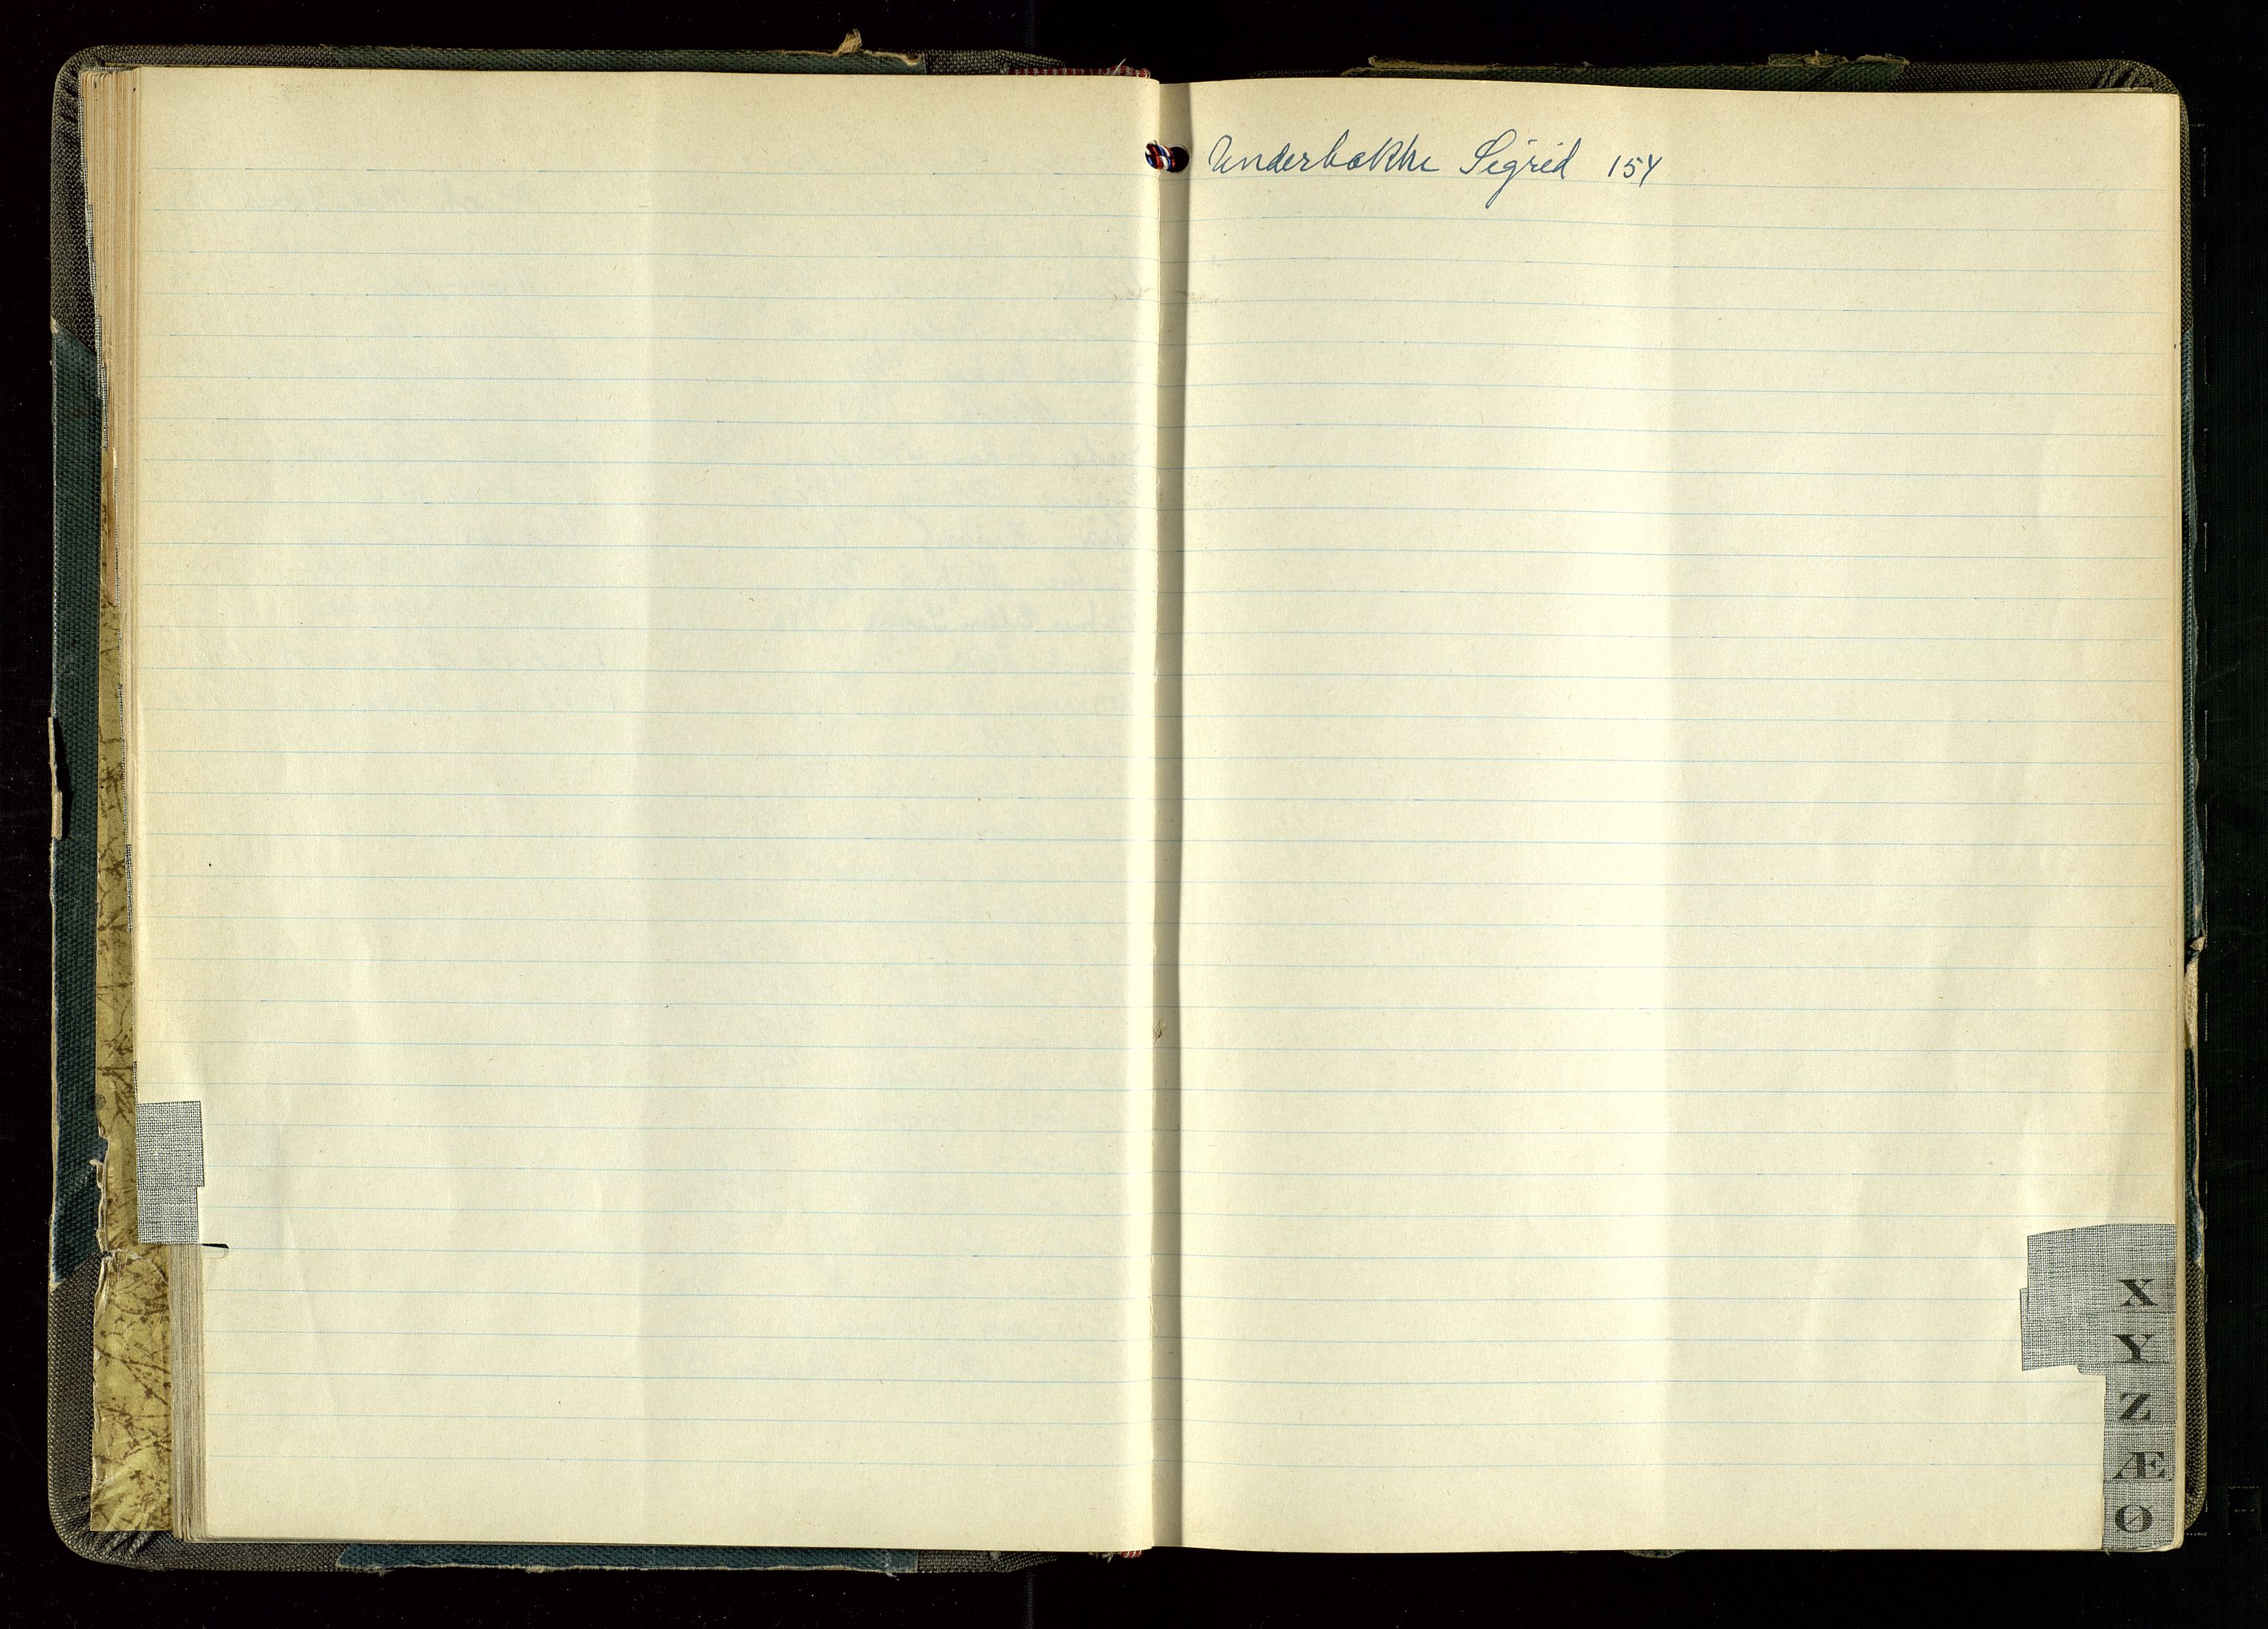 Hetland lensmannskontor, SAST/A-100101/Gga/L0005: "Protokoll over anmeldte dødsfall" (med alfabetisk navneregister), 1945-1952